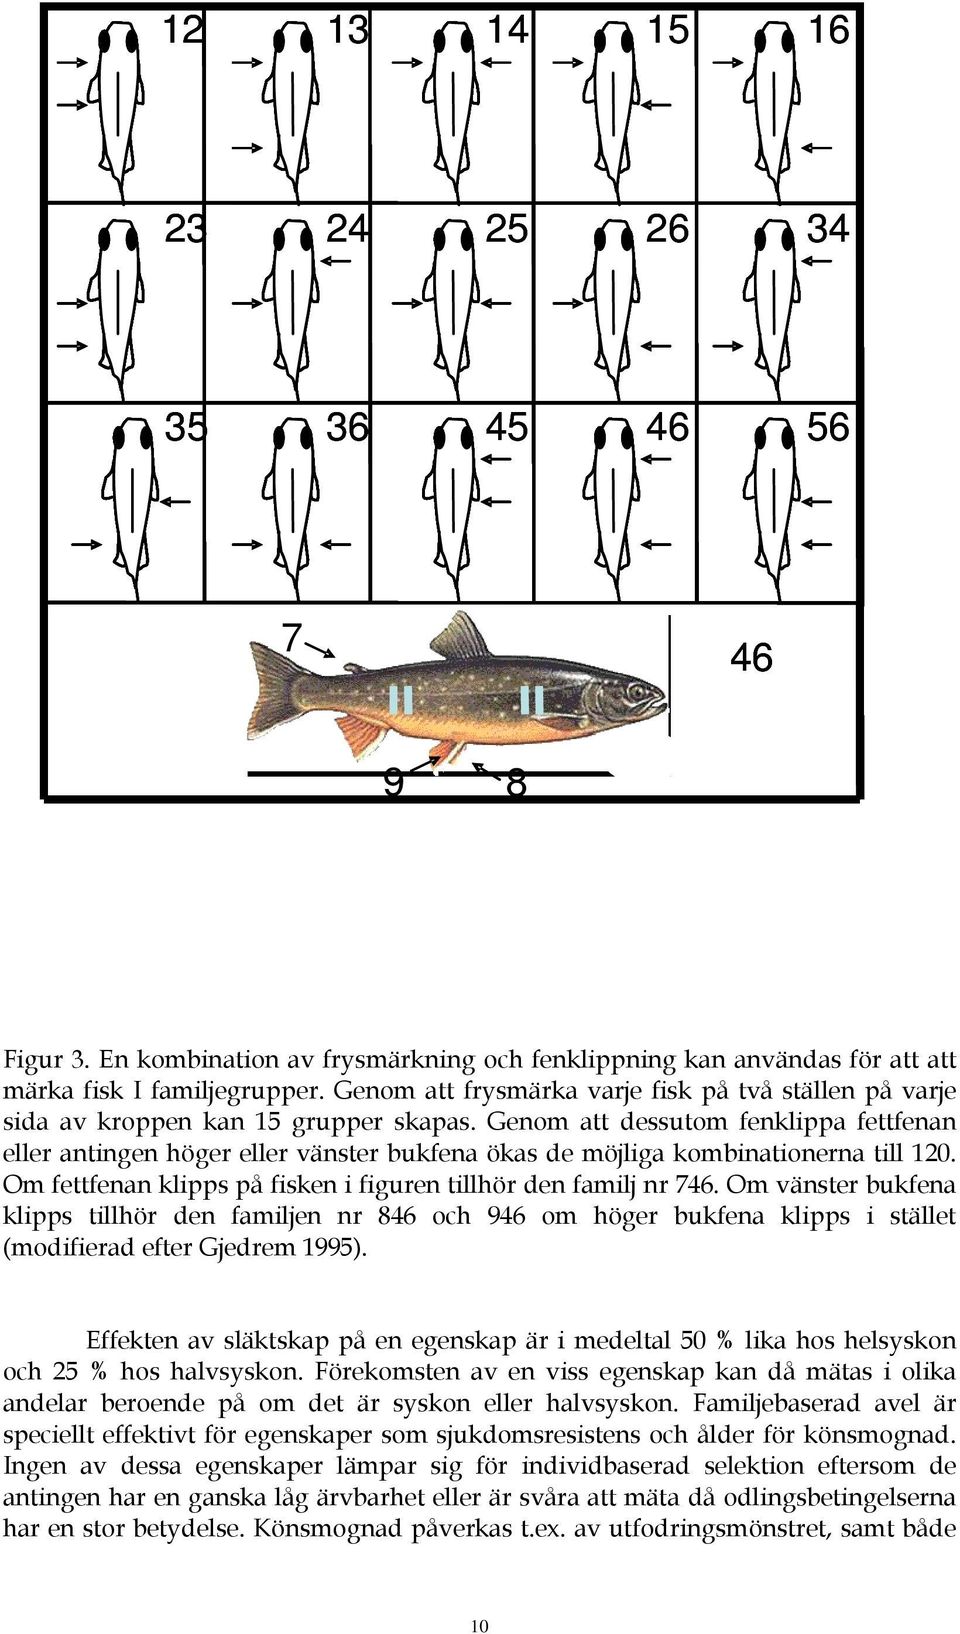 Genom att dessutom fenklippa fettfenan eller antingen höger eller vänster bukfena ökas de möjliga kombinationerna till 120. Om fettfenan klipps på fisken i figuren tillhör den familj nr 746.